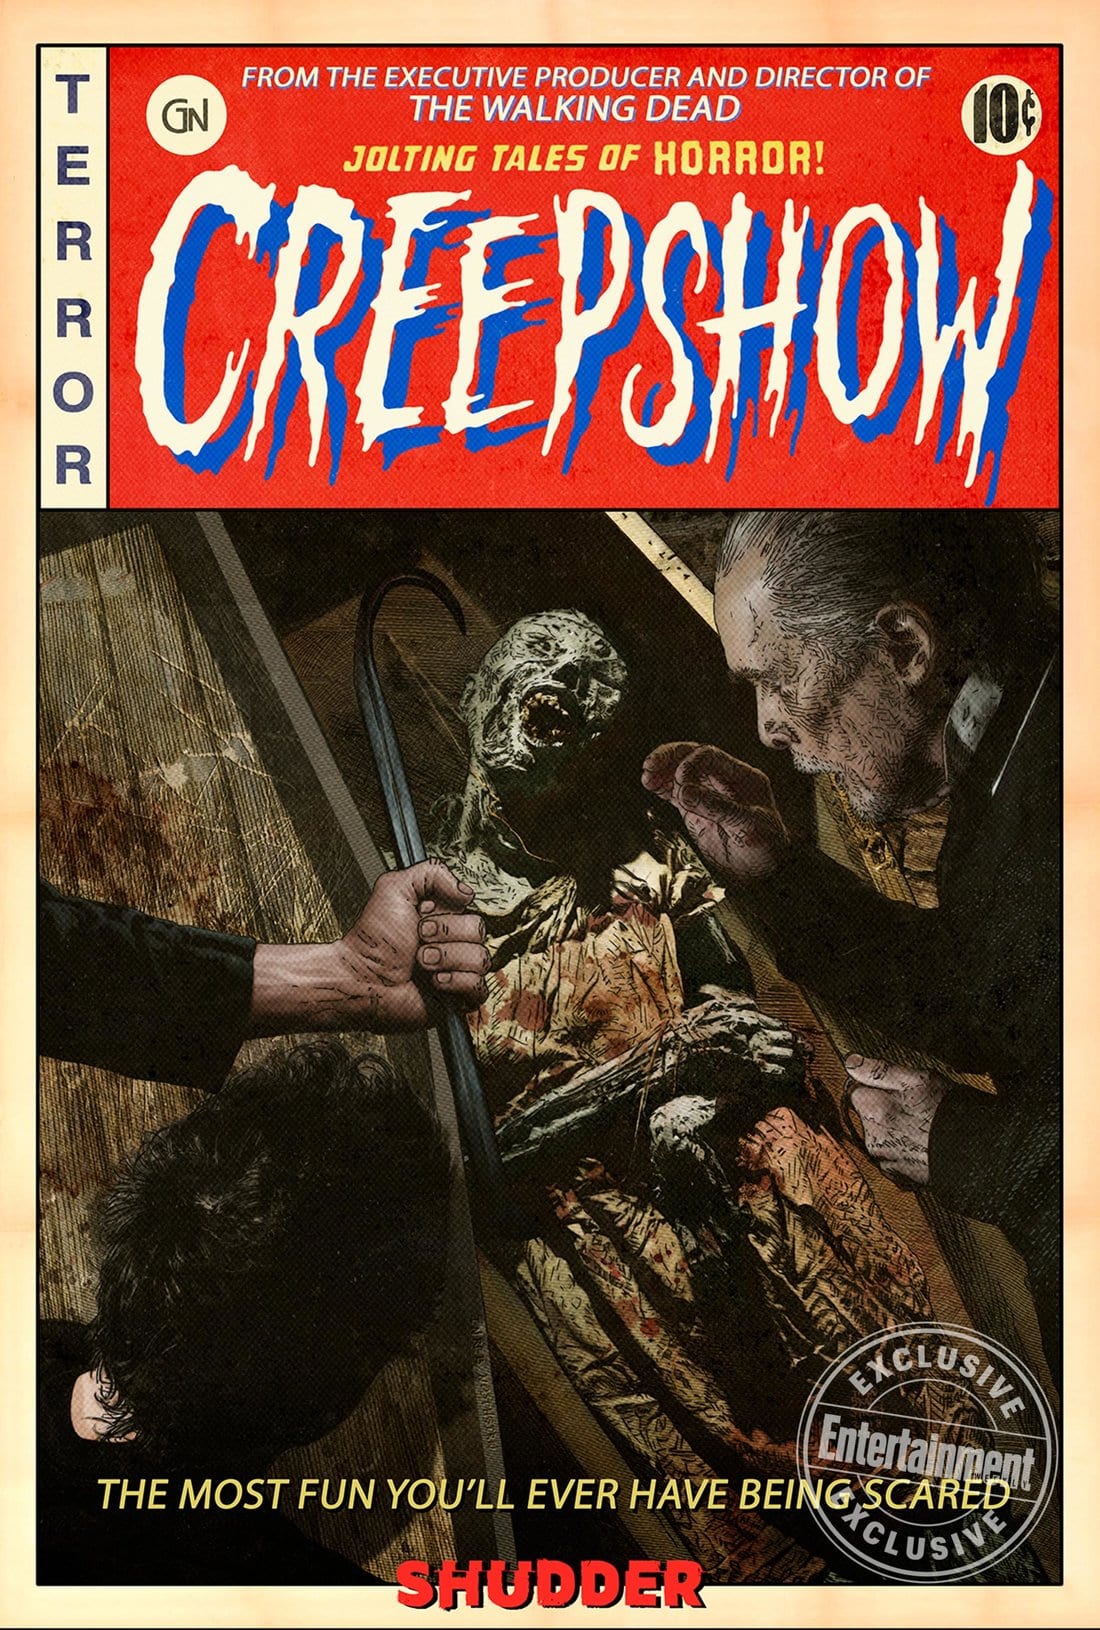 Cartell de la sèrie de televisió Creepshow